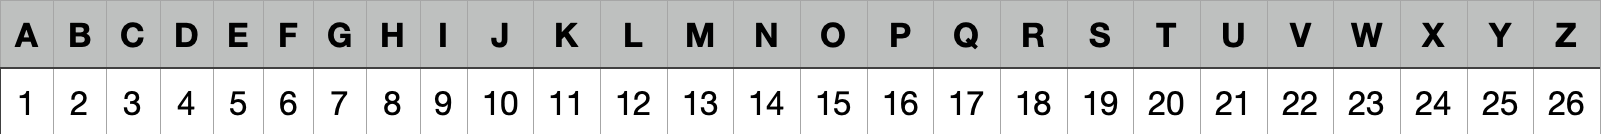 An dieser Tabelle kannst du schnell ablesen, wie lang ein Klebestreifen für welchen Buchstaben sein muss.